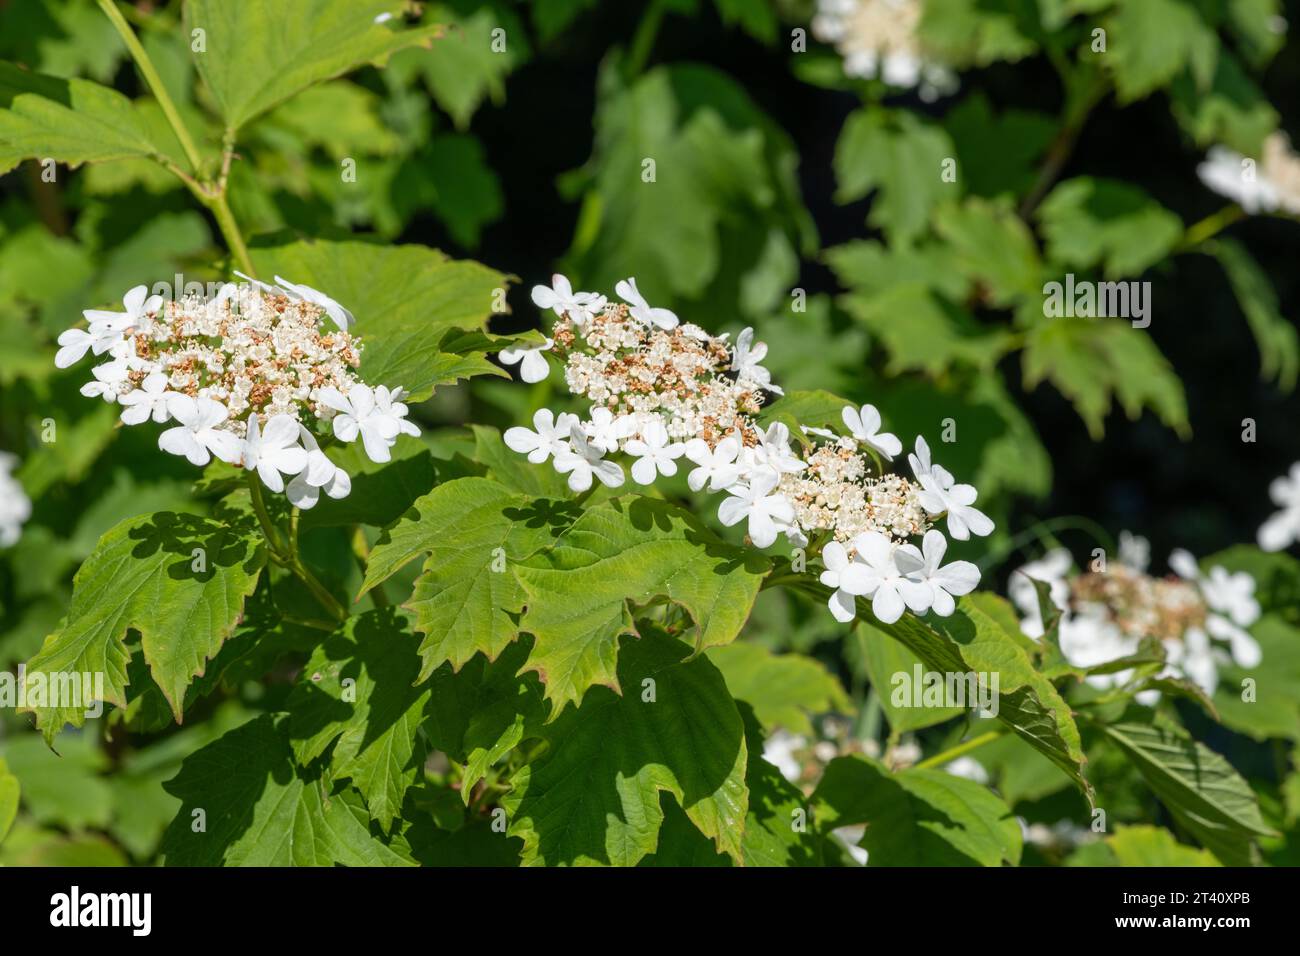 Close up of cranberry bush viburnum (viburnum trilobum) flowers in bloom Stock Photo